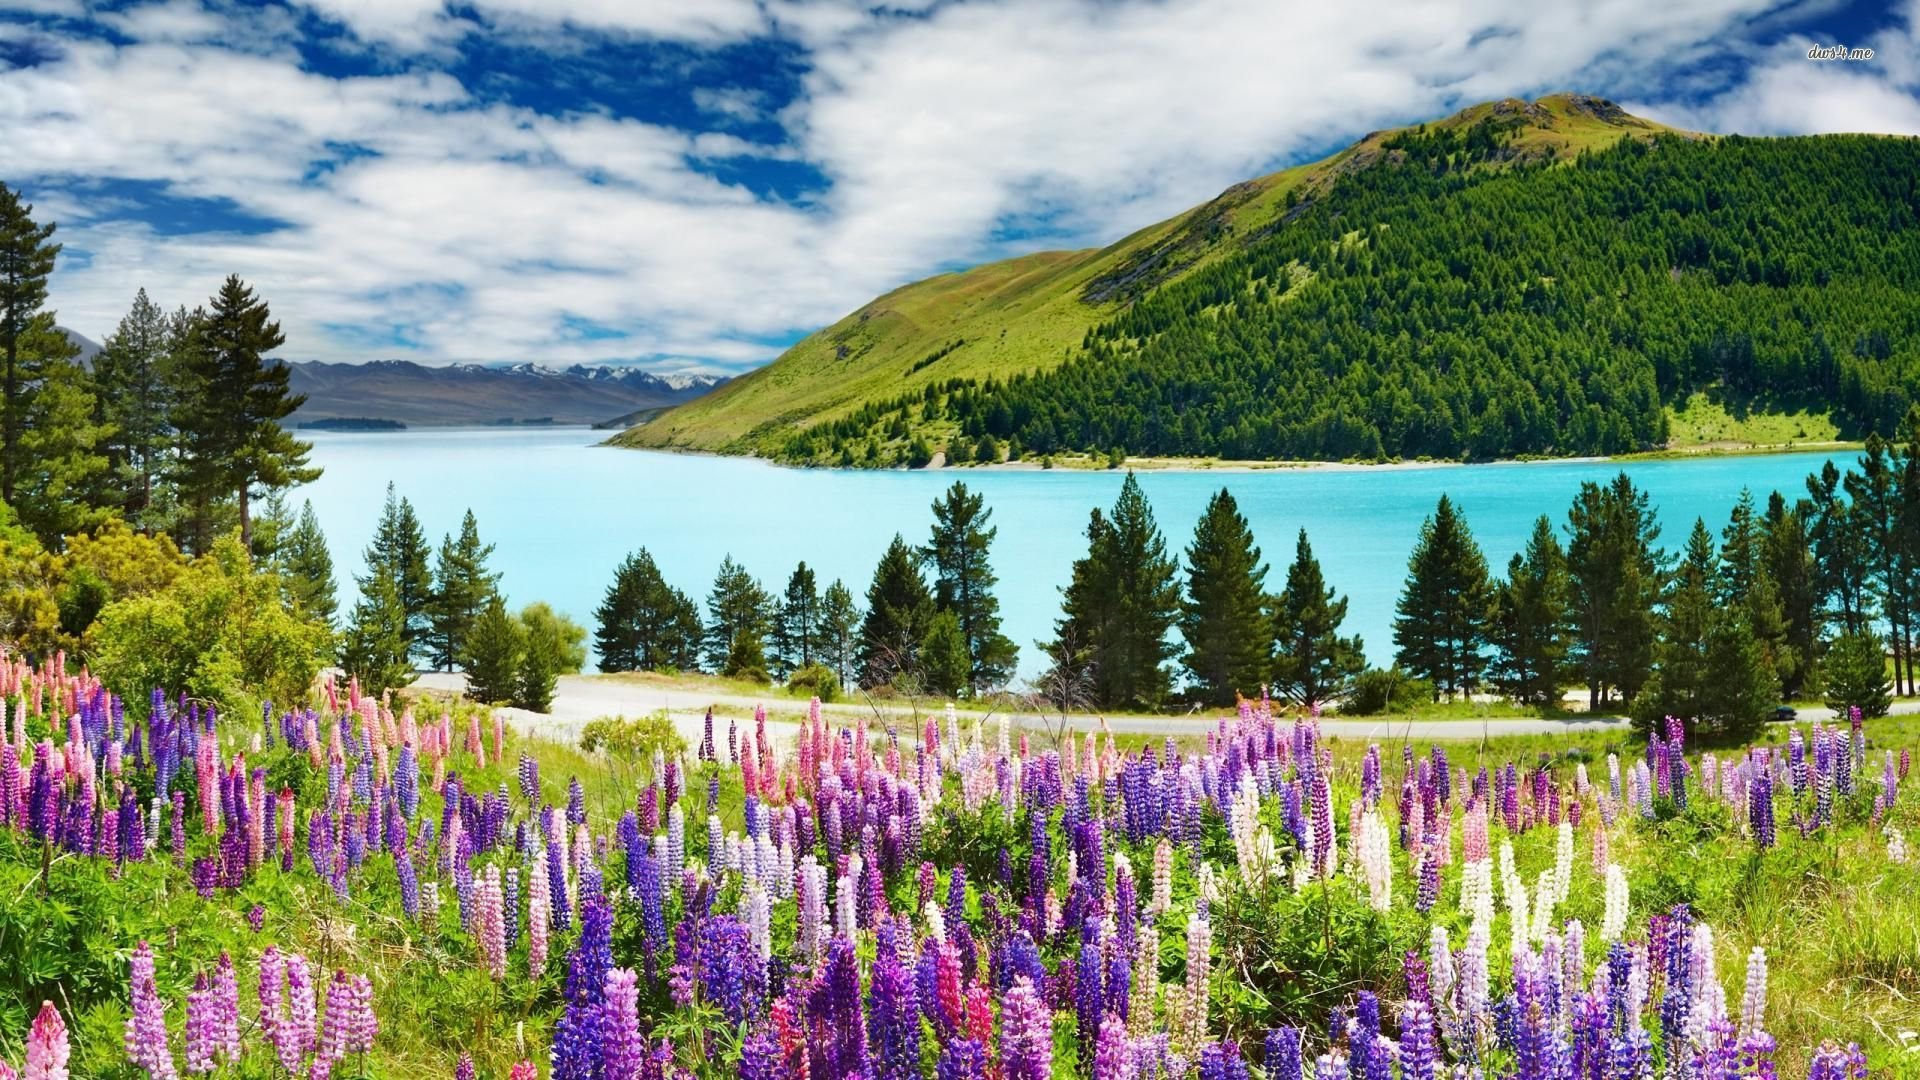 30 Hình ảnh cánh đồng hoa tuyệt đẹp nhất thế giới Full HD - Hà Nội Spirit Of Place 21